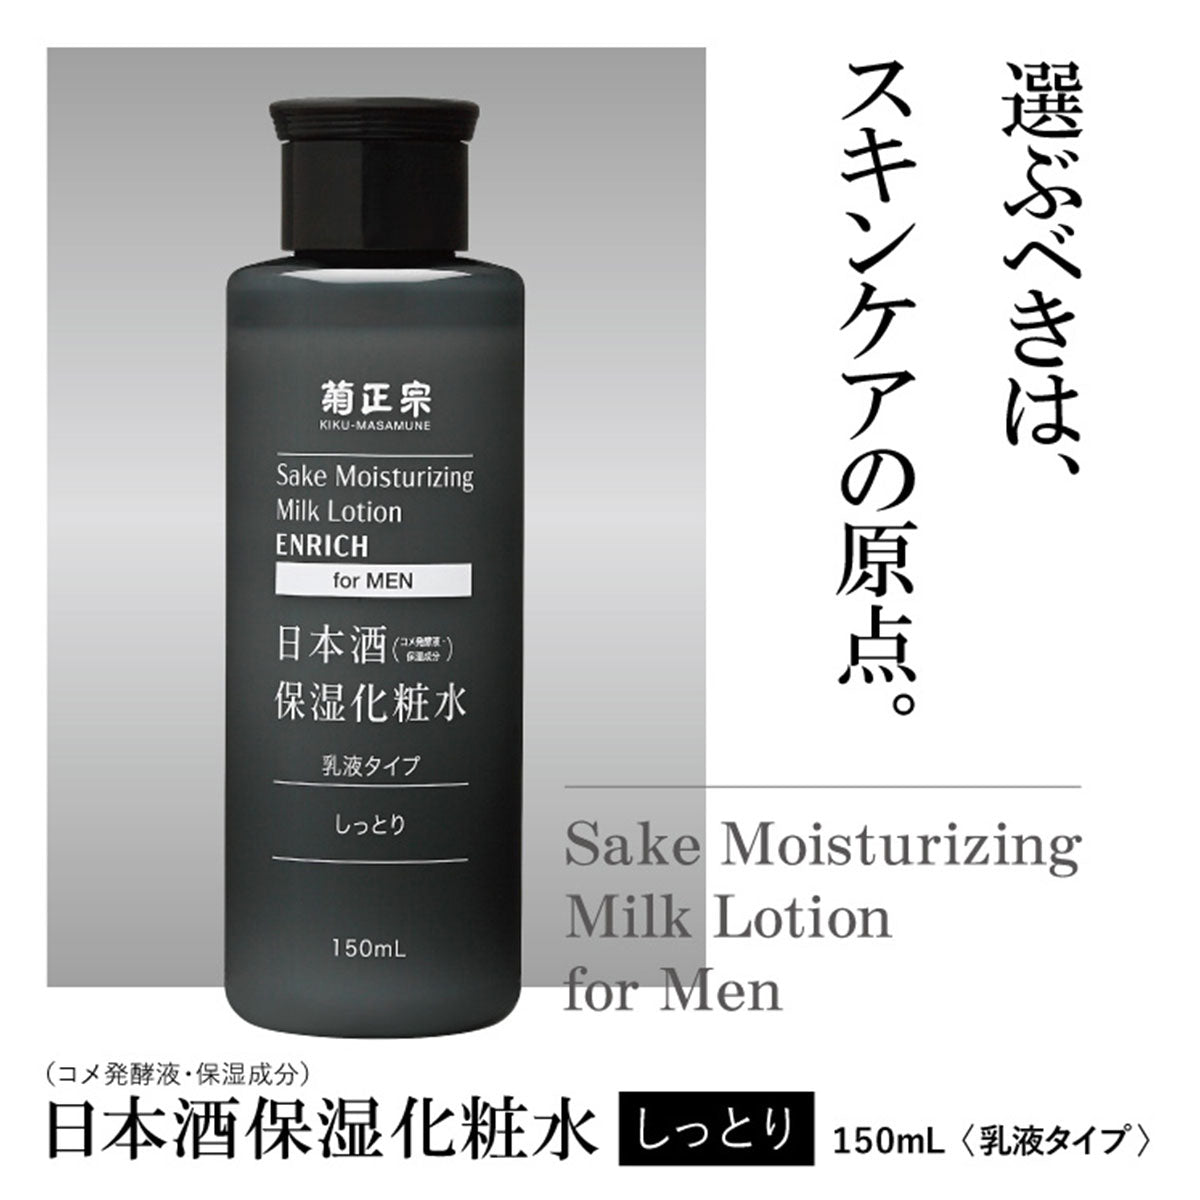 Sake Moisturizing Milk Lotion For Men